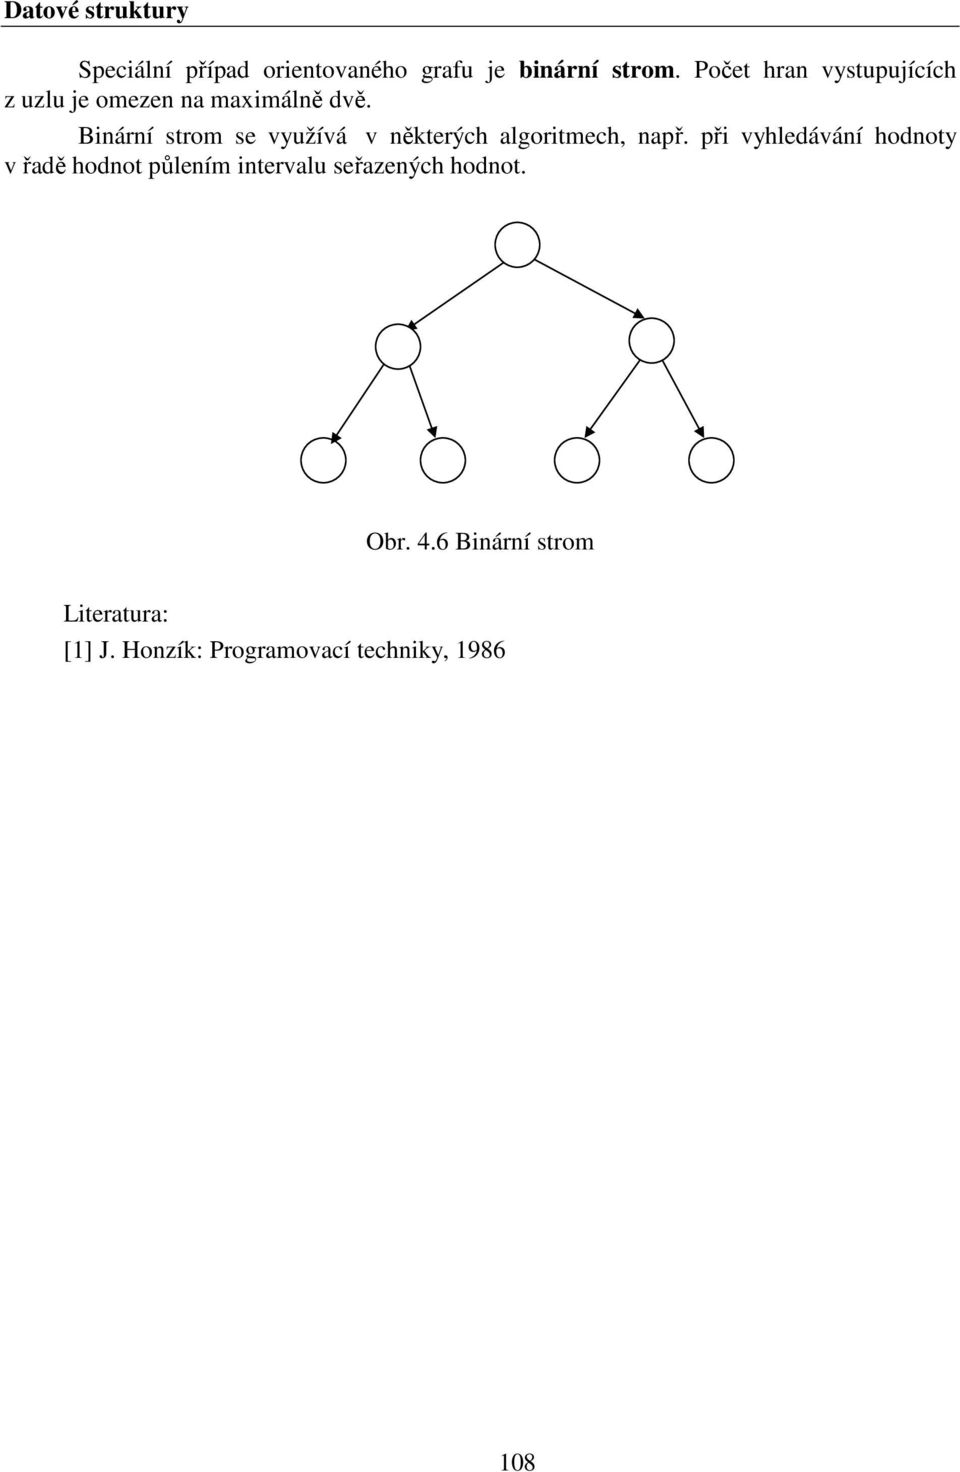 Binární strom se využívá v některých algoritmech, např.